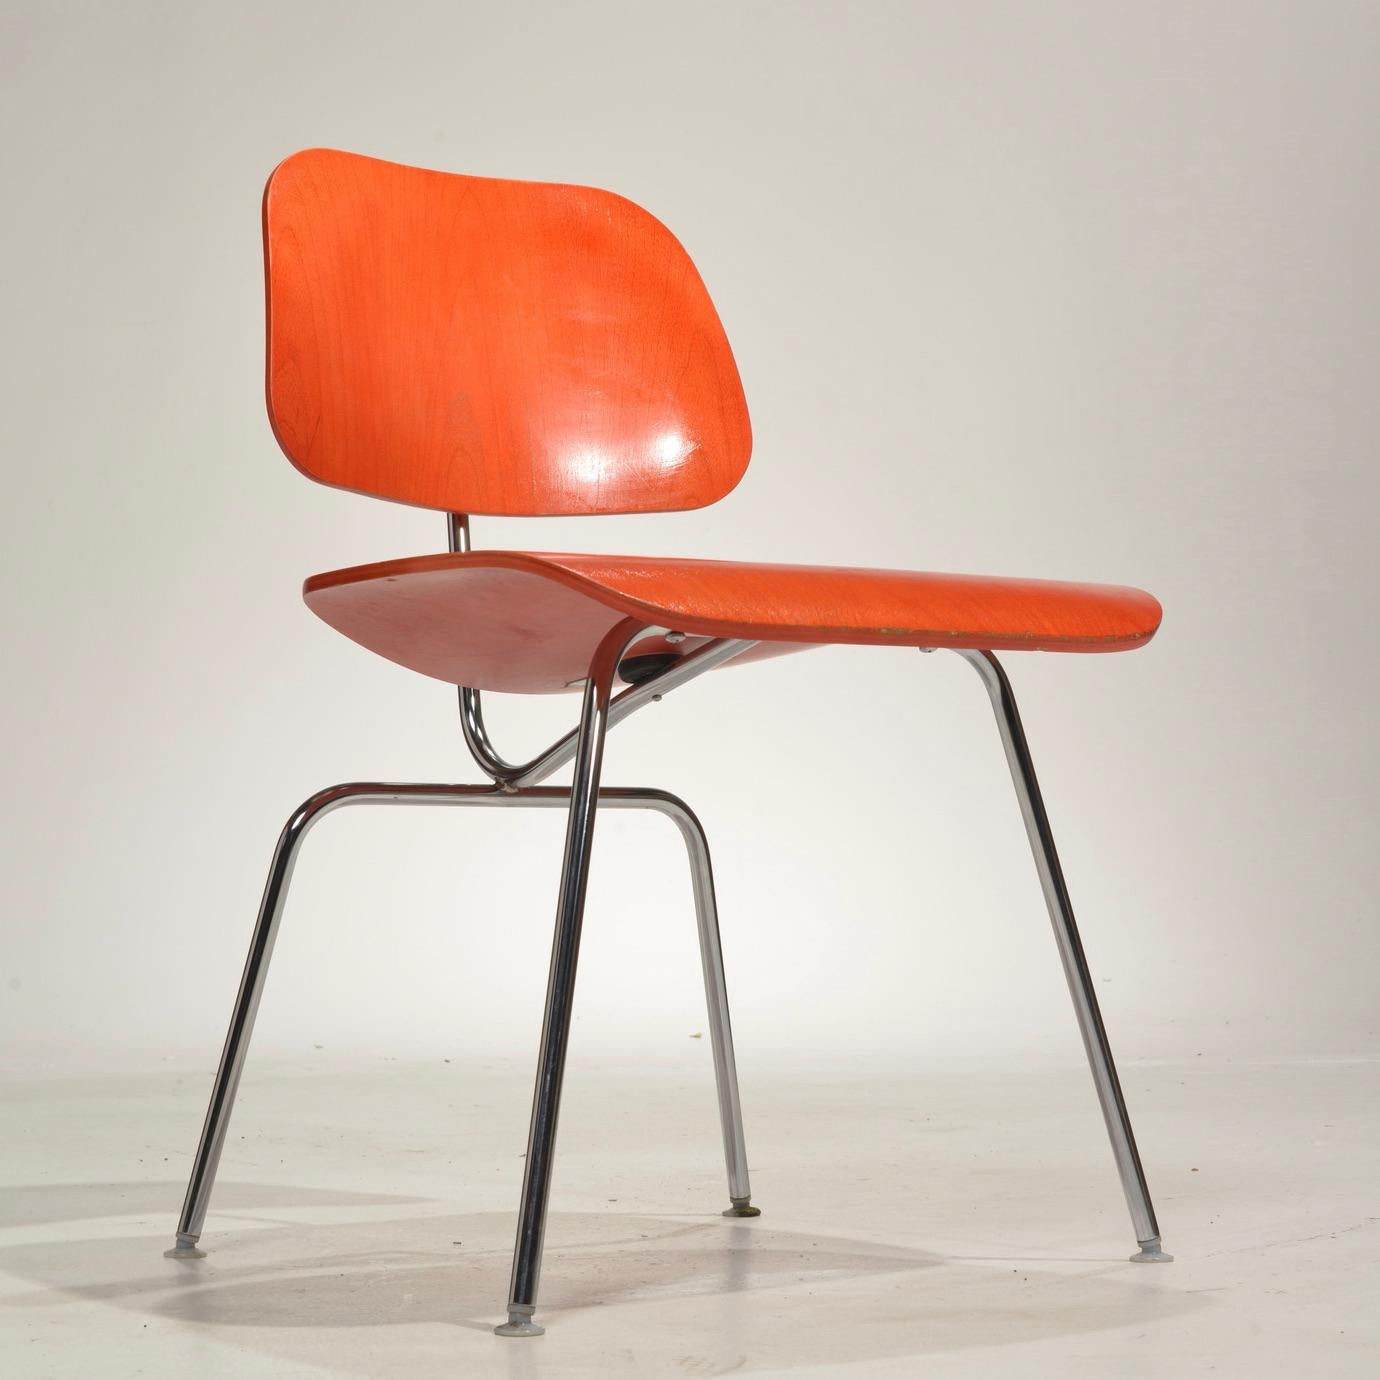 Chaise DCM (Dining metal chair) de Charles et Ray Eames pour Herman Miller.
Conçue en 1946, cette chaise en contreplaqué moulé + acier chromé est un classique. On l'appelle parfois la 